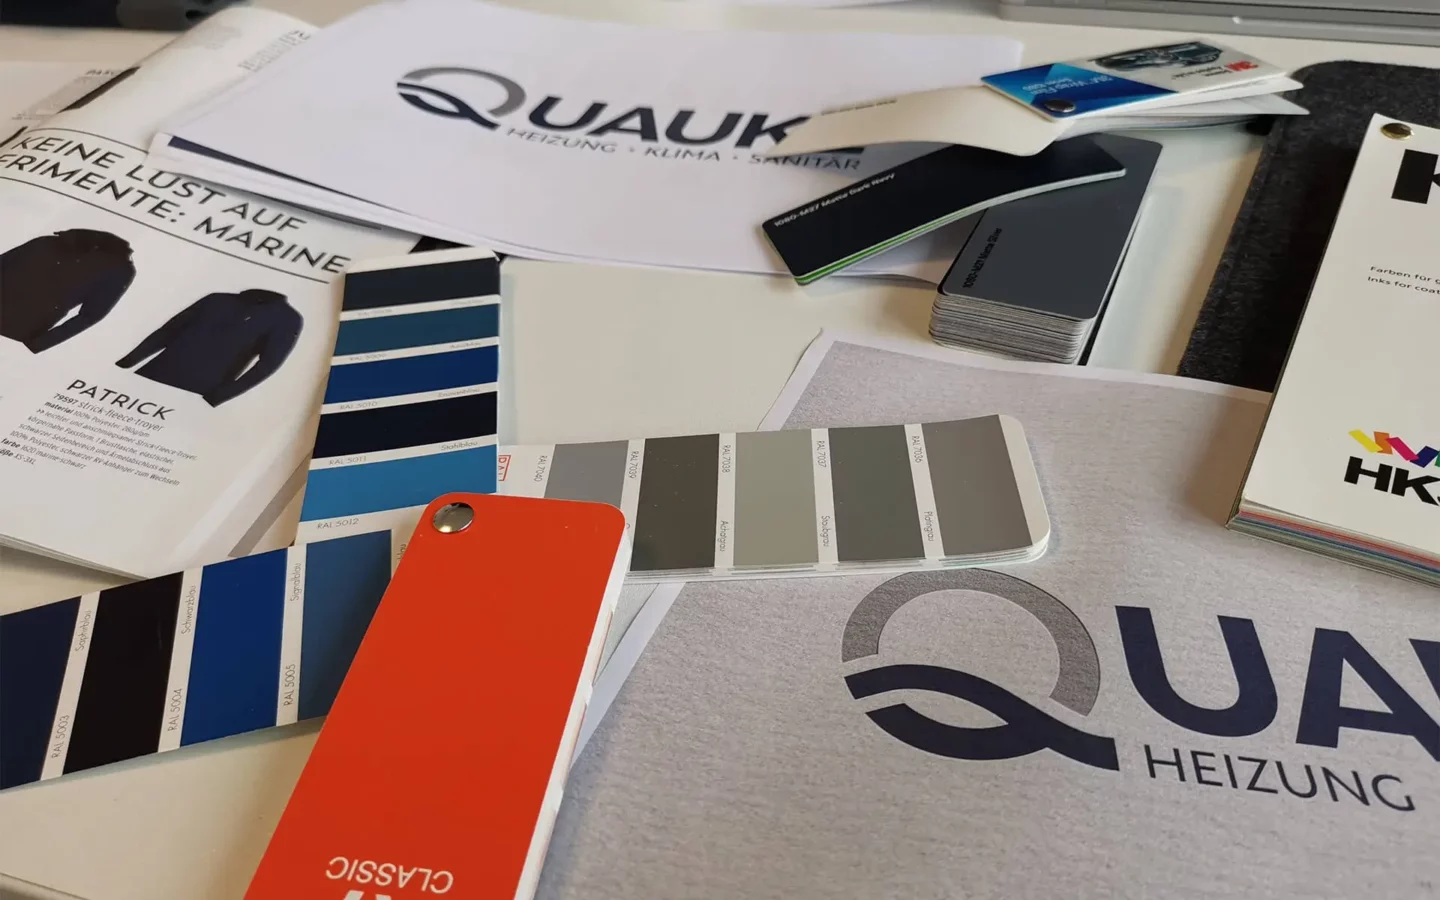 Farbfächer mit Corporate Design Leitfaden der Quauke GmbH